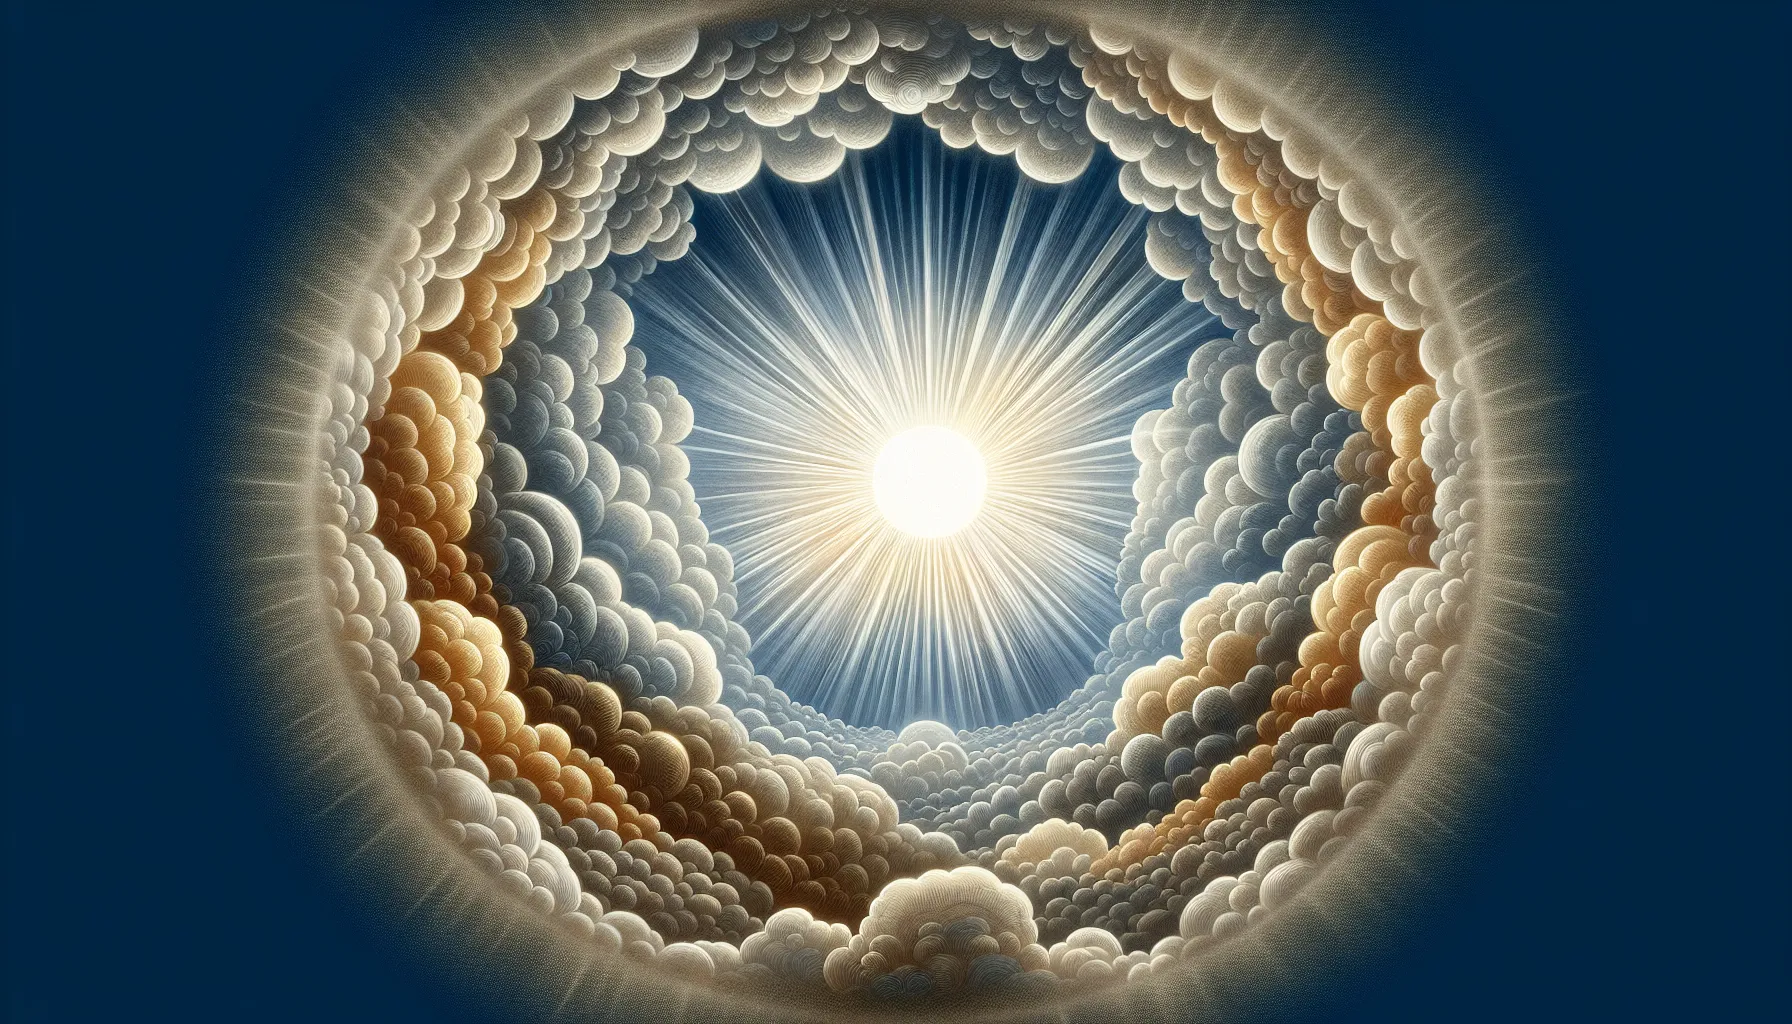 Dios representado como una luz brillante rodeada de nubes en una ilustración basada en descripciones bíblicas.